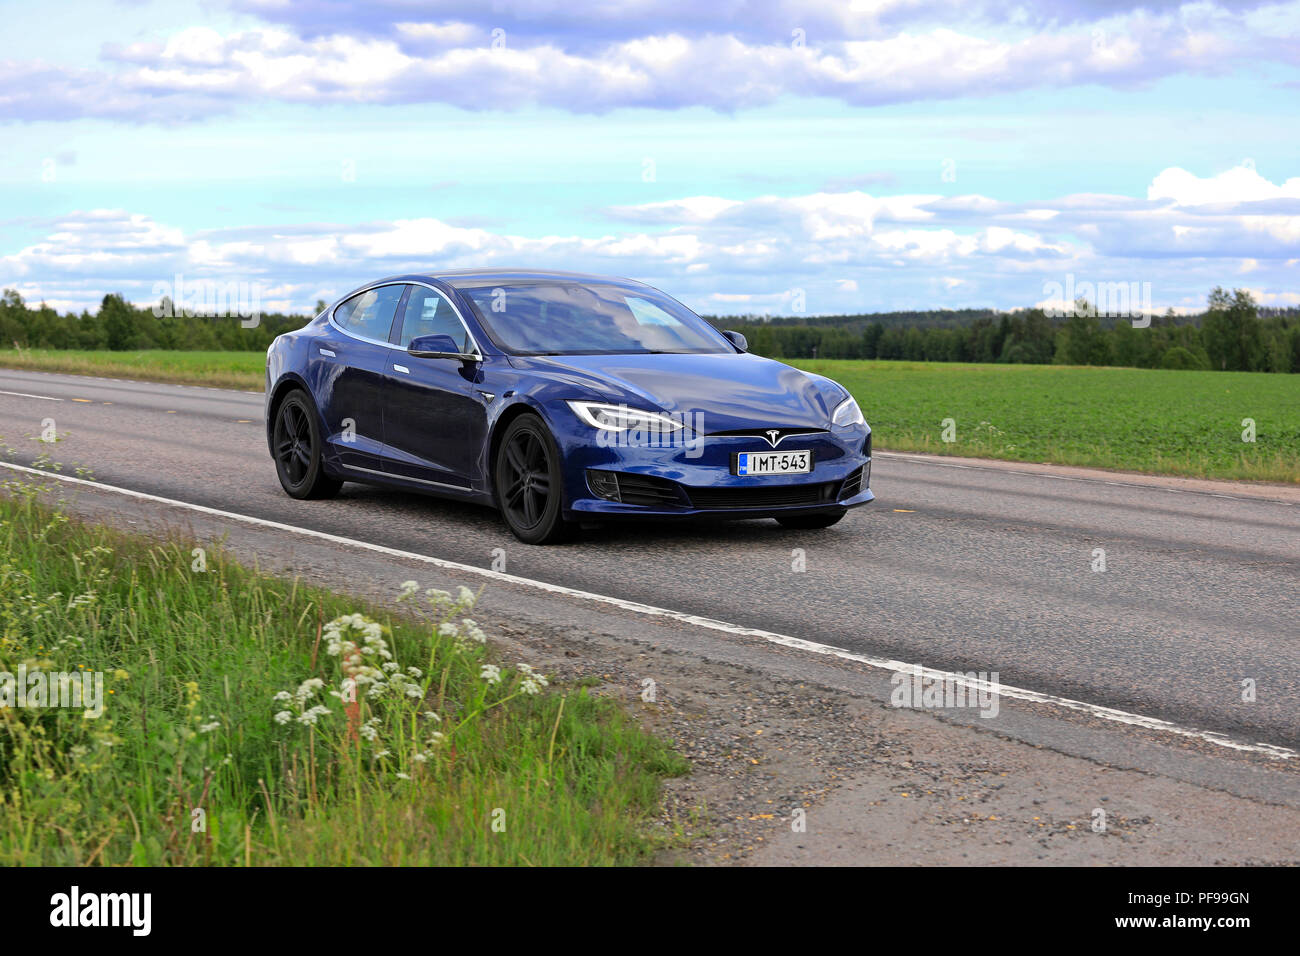 Blau Tesla Model S Elektroauto der aktualisierten Exterieur Design bei Geschwindigkeit auf der Autobahn in ländlichen Szenerie am Tag der Sommer. Jamsa, Finnland - 14. Juni 2018. Stockfoto